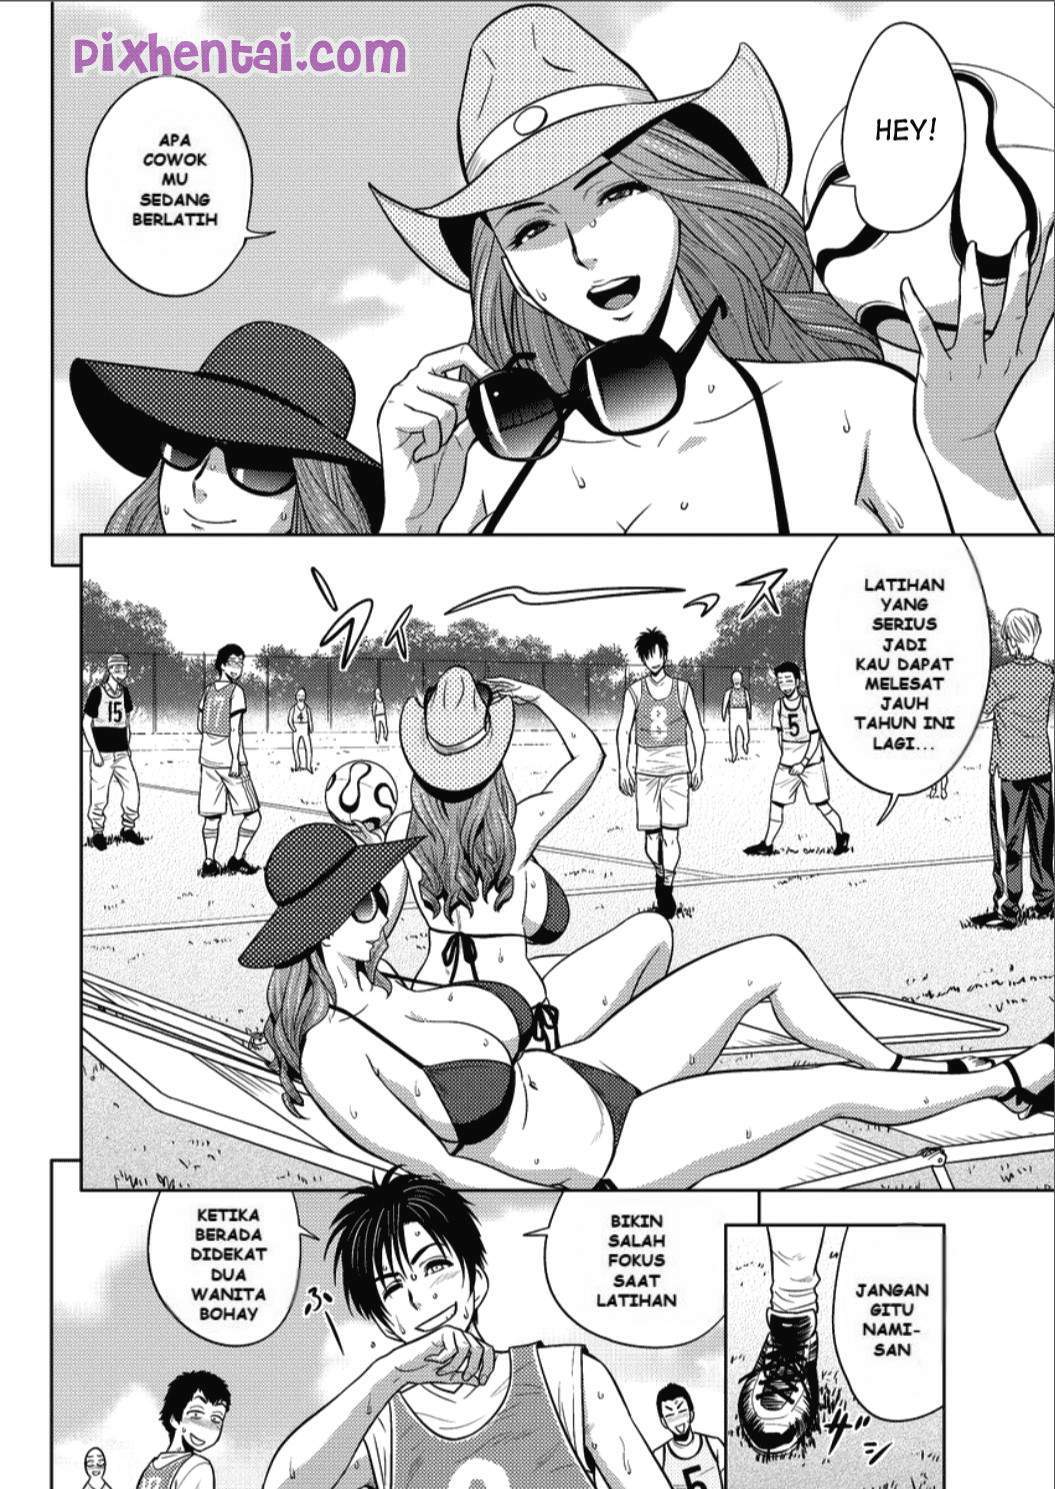 Komik hentai xxx manga sex bokep sesuatu yang dapat memuaskan tubuh dan pikiran 02